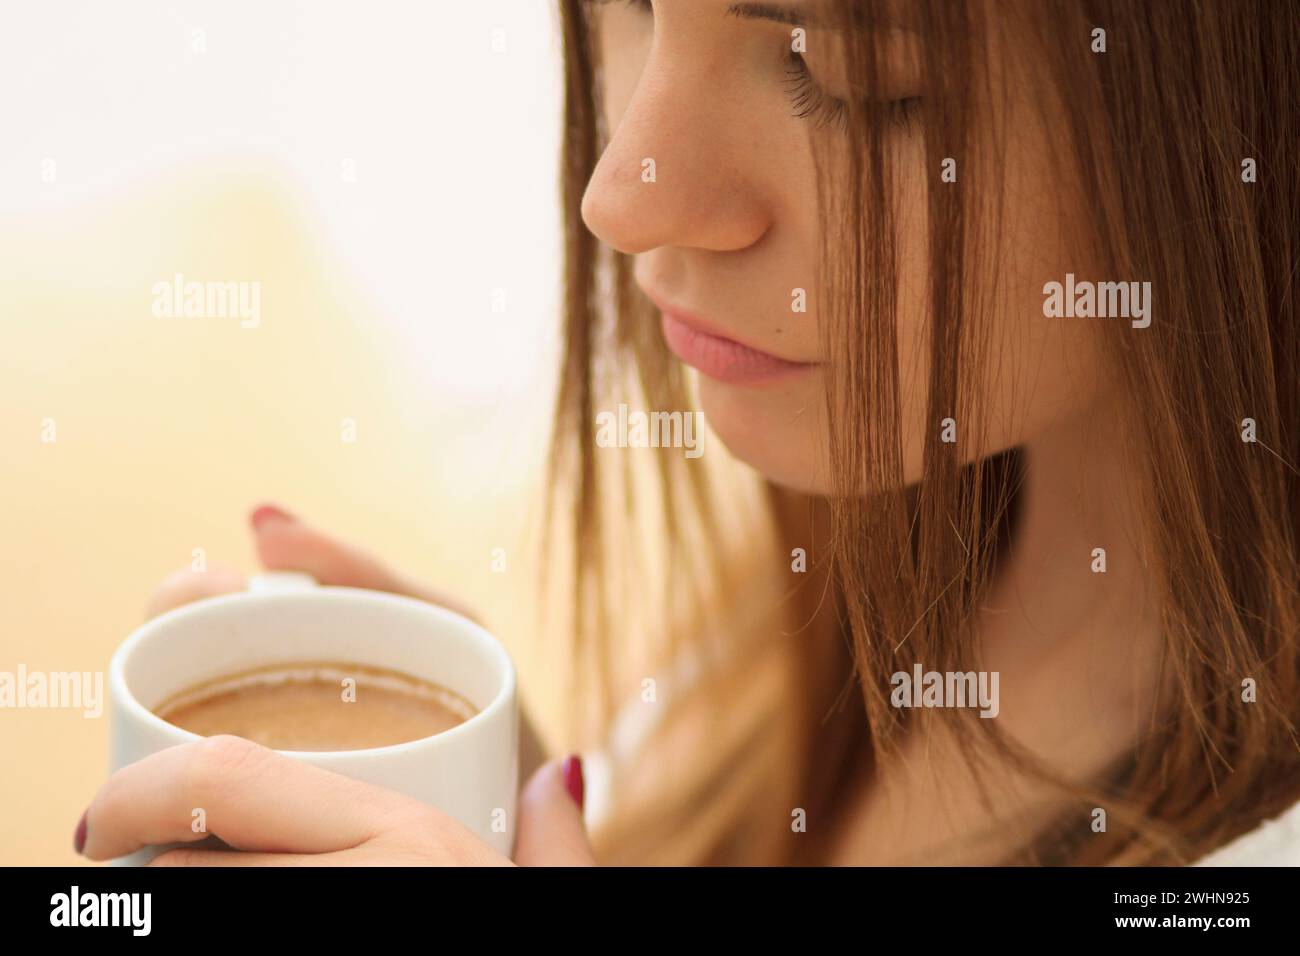 Mujer joven bebiendo de una taza Stock Photo